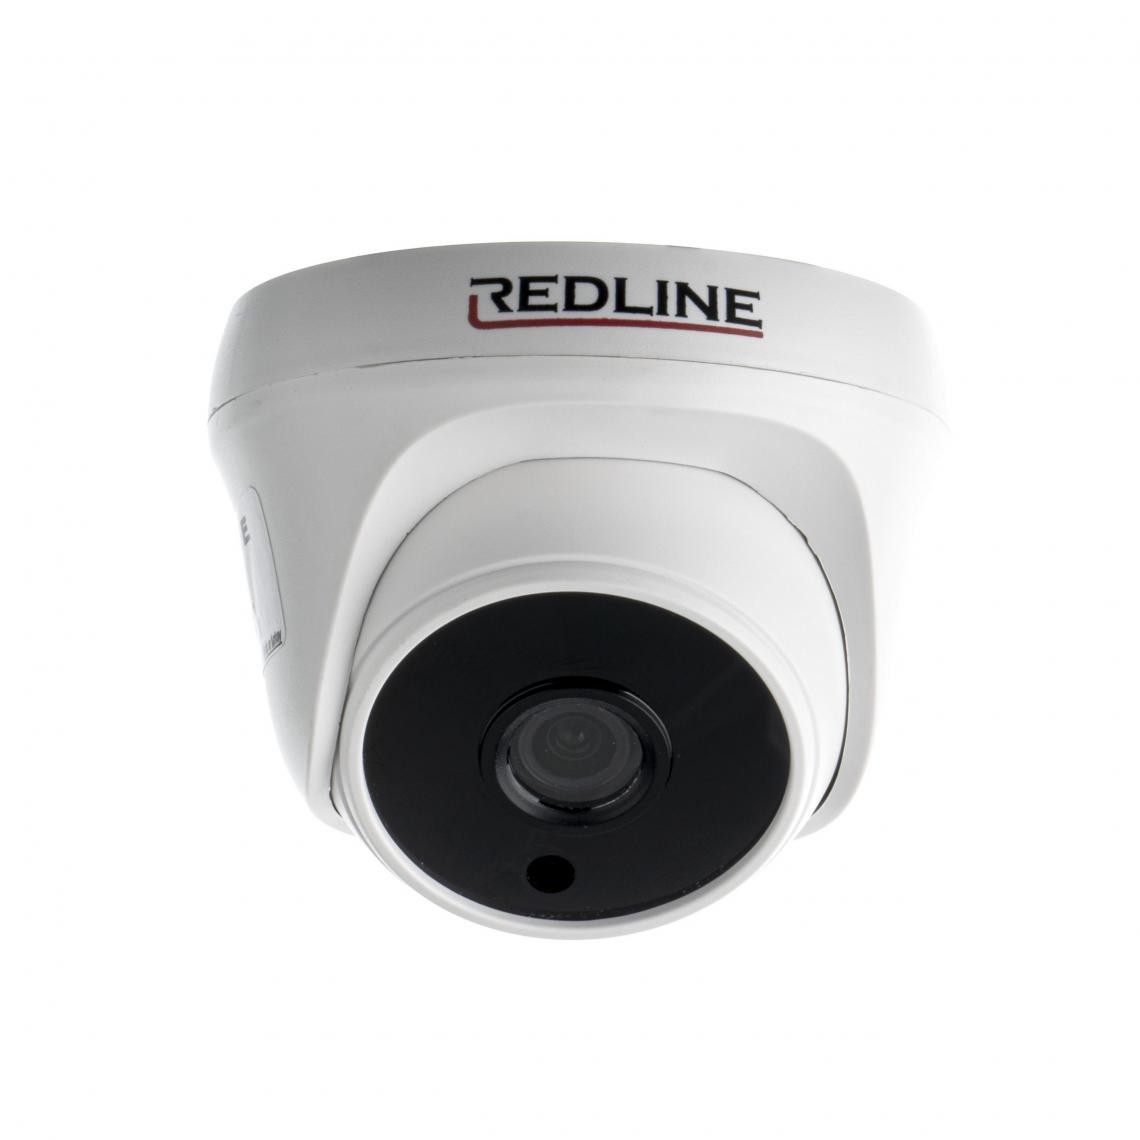 Redline - Caméra IP Dôme - Redline Série Eco IPC-565S - 5 MP 15fps, 2MP 20fps, Vidéo en direct, Détection de Mouvement, Analyse du renseignement - Caméra de surveillance connectée